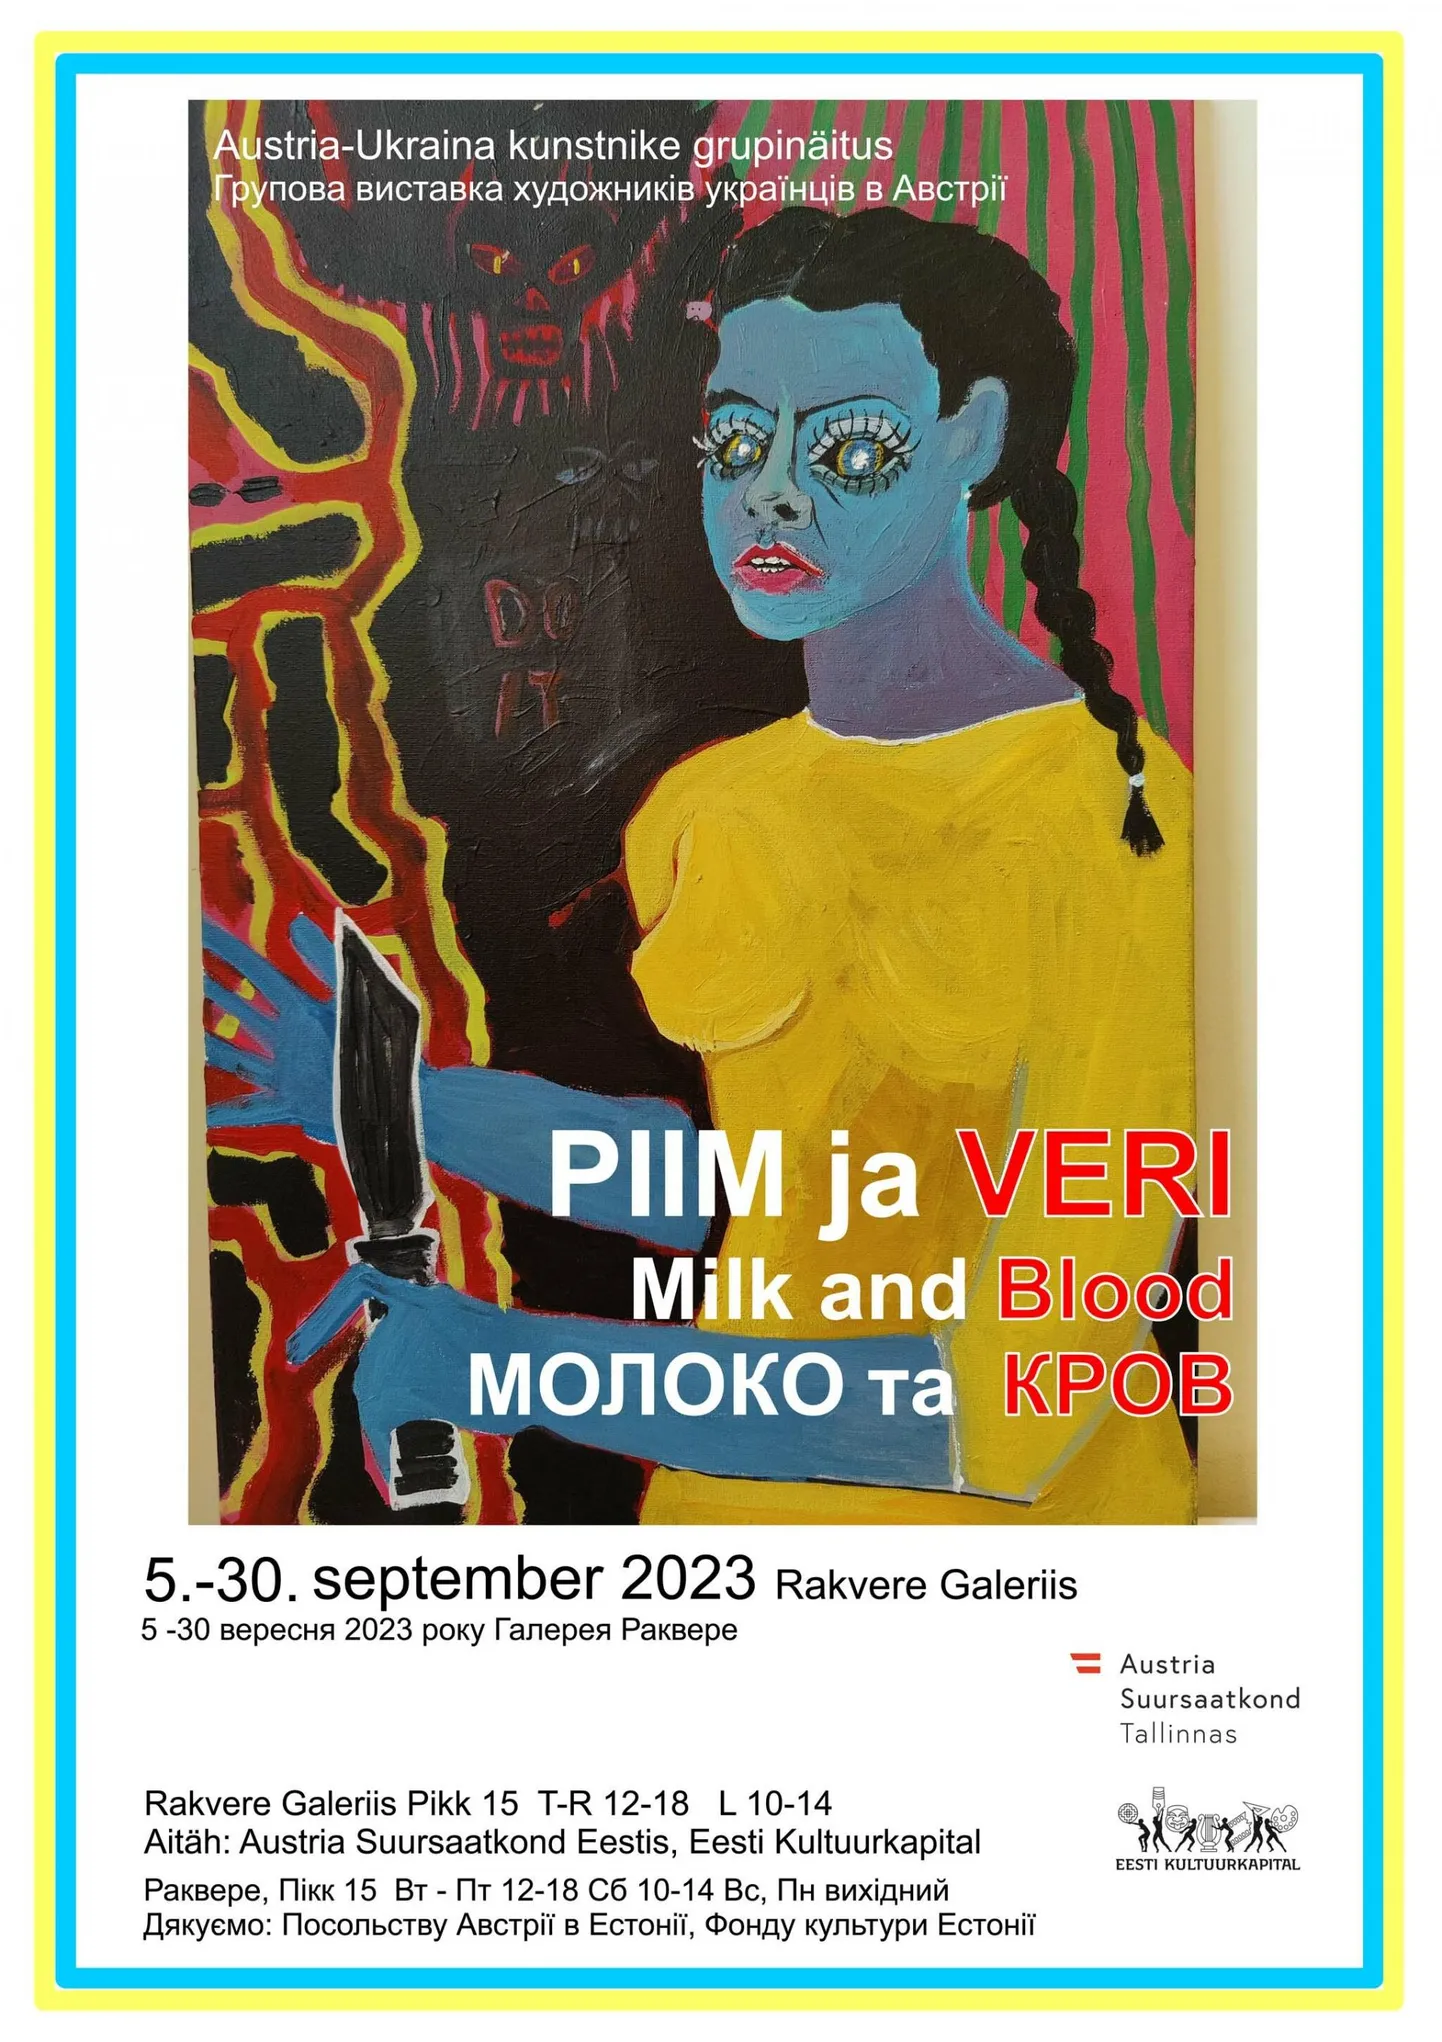 Ukraina-Austria kunstnike näitus "Veri ja piim".